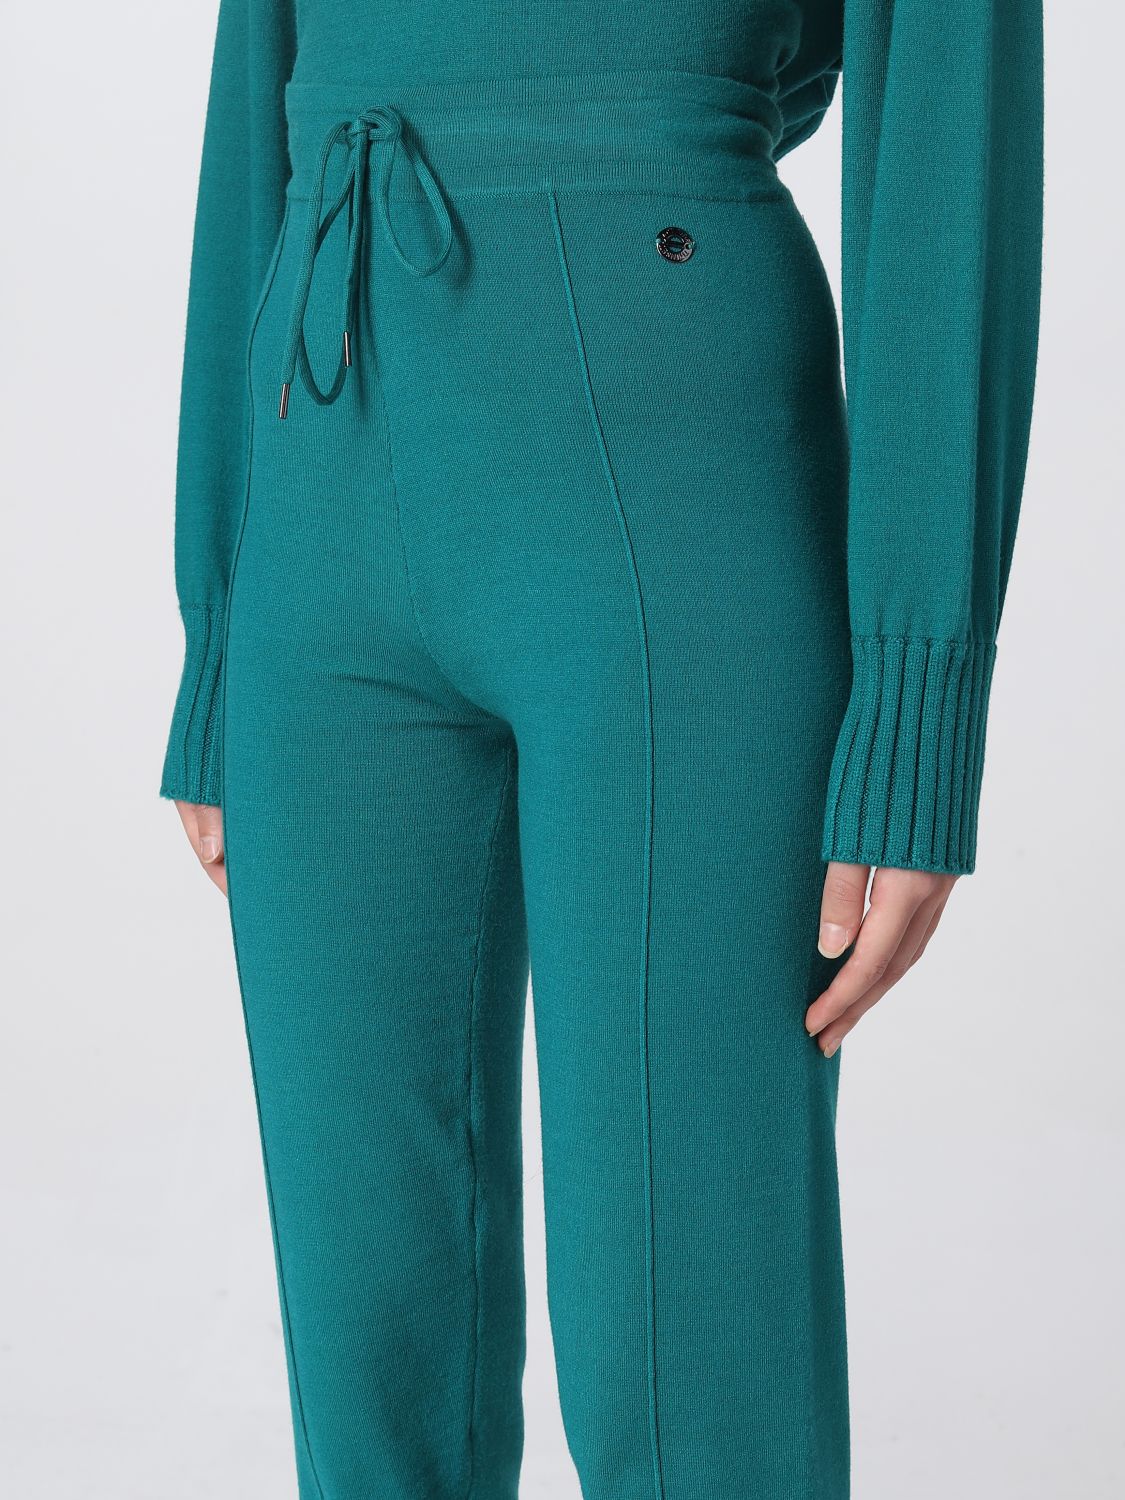 Pantalón Actitude Twinset: Pantalón Actitude Twinset para mujer verde 4